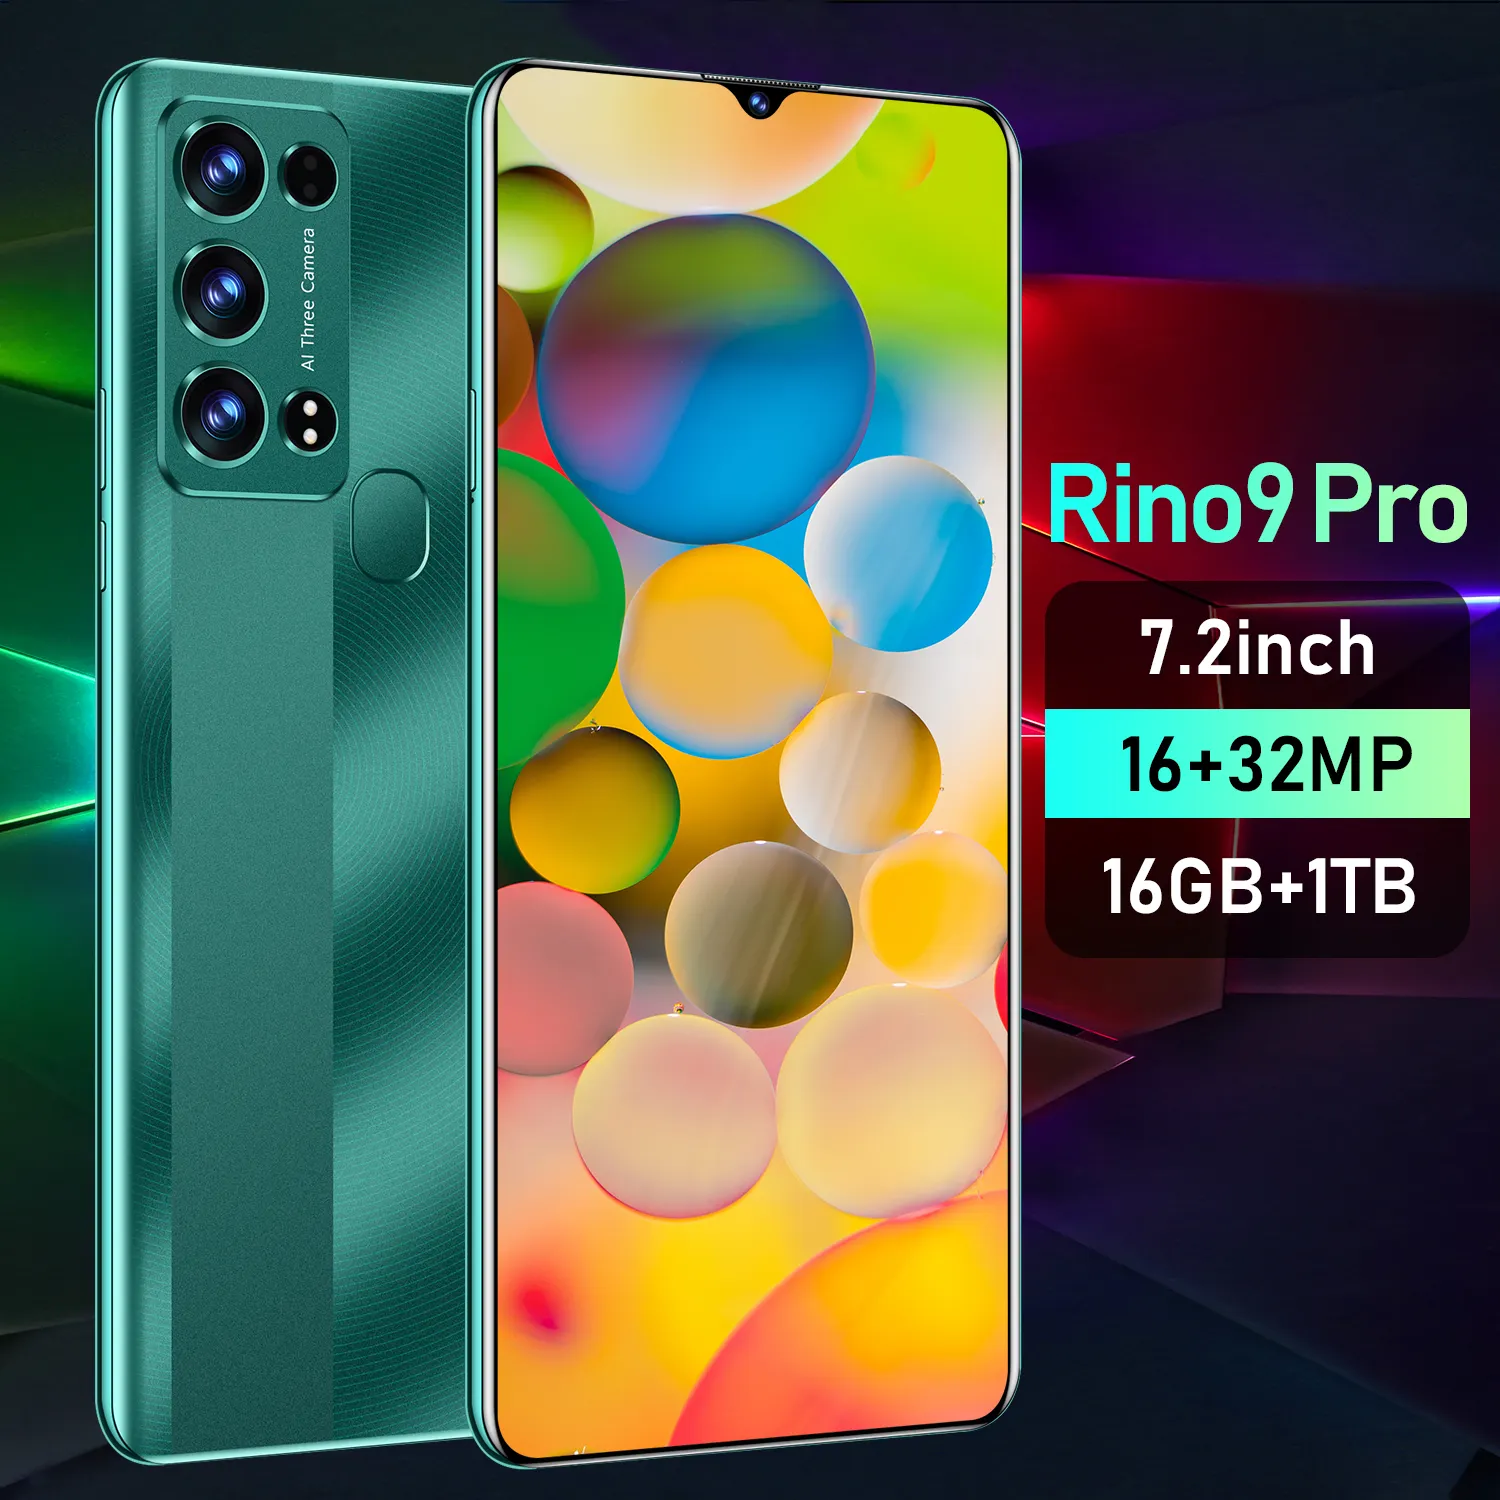 Rion 9 pro téléphone Mobile Tecno Camon 3 Smartphone de marque personnalisée 16 + 1 to téléphone portable 5G Android 11 3g et 4g 2022